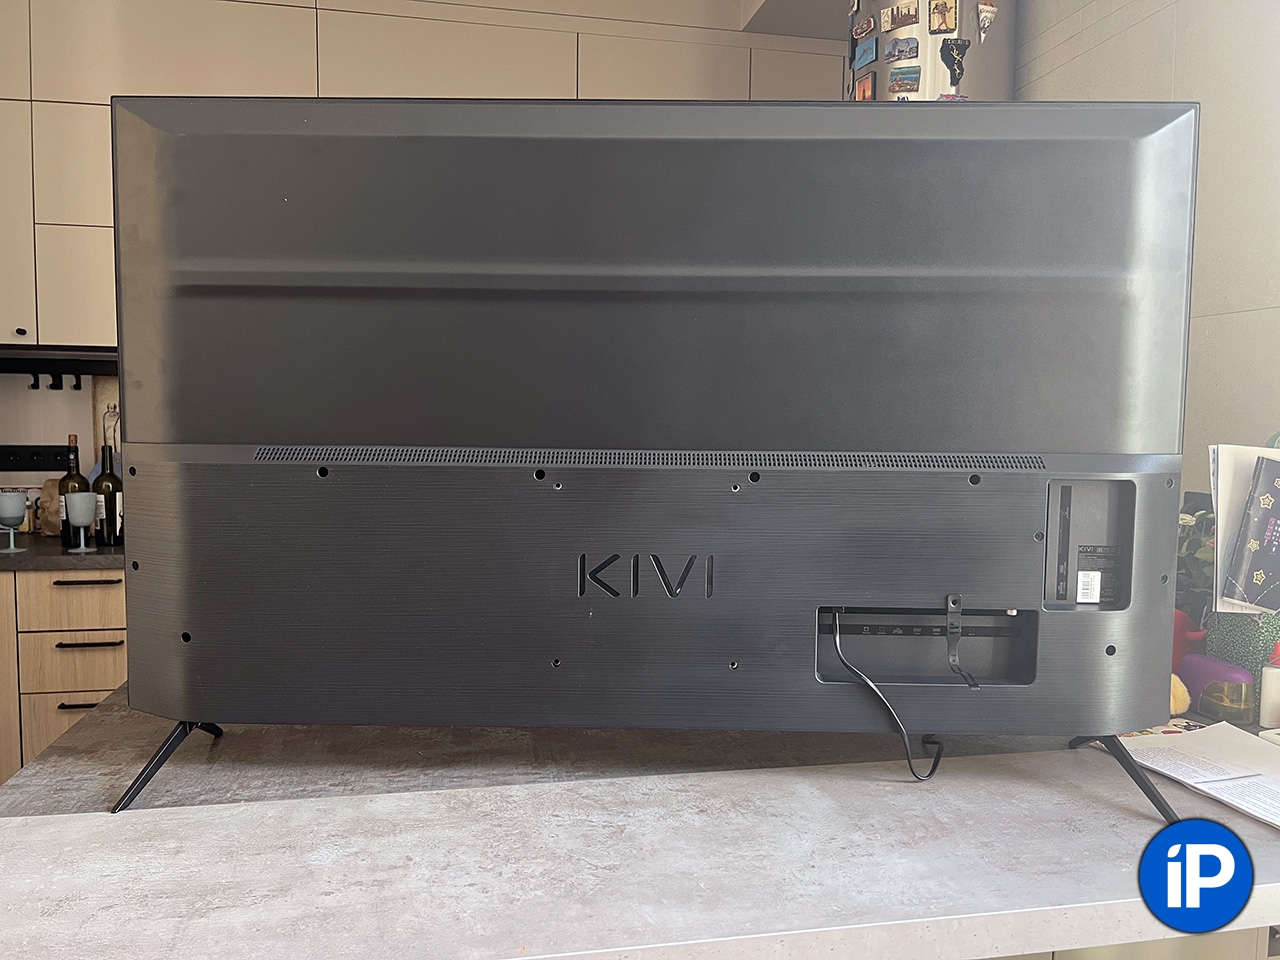 Обзор ультратонкого телевизора KIVI (модель 55U750NB) с 4К и Smart TV.  Чистый Android, и даже хорош